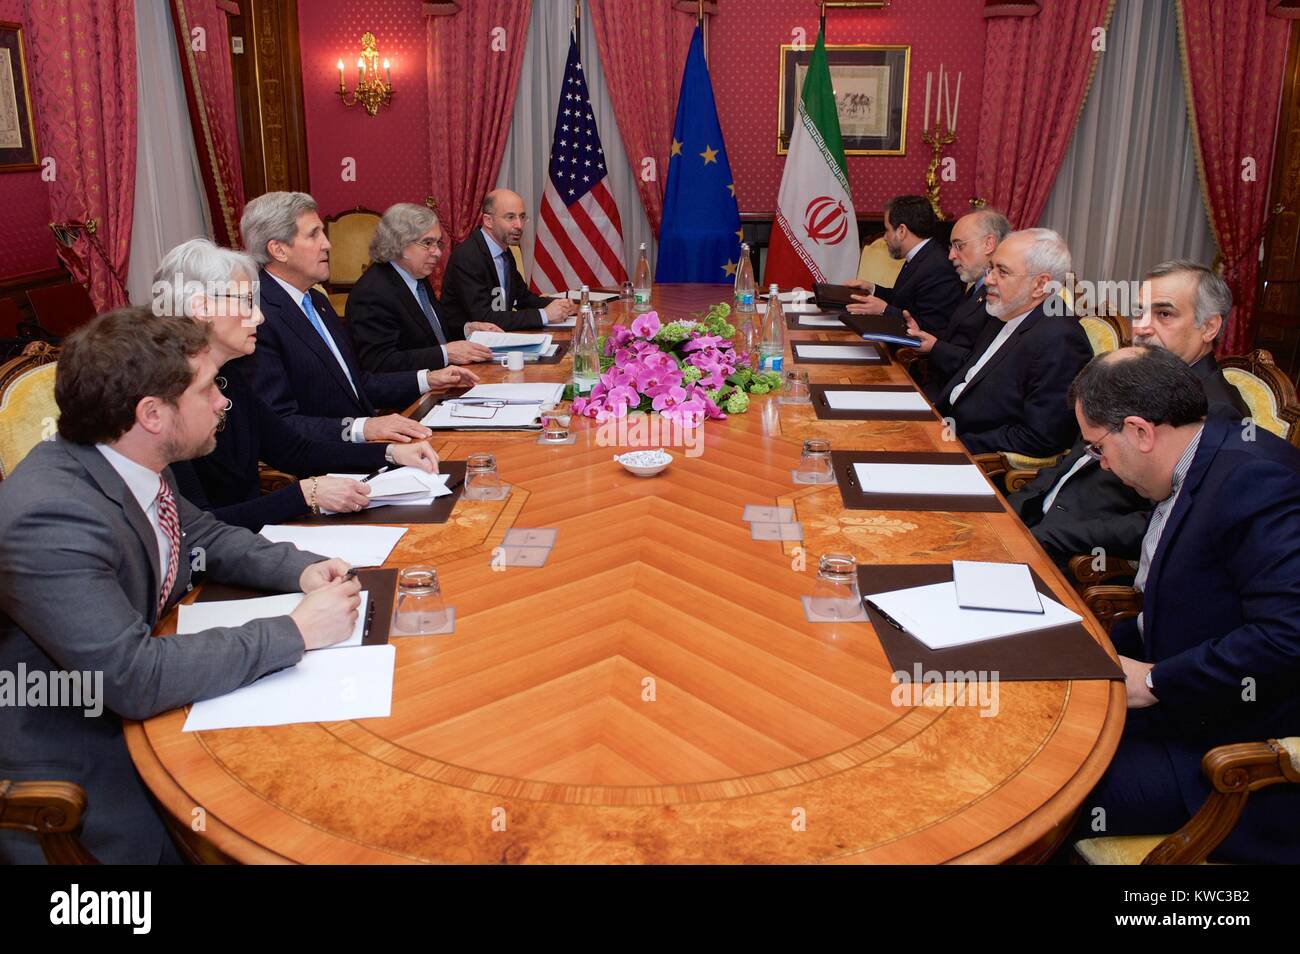 Le ministre iranien des affaires étrangères Zarif et les représentants des États- Unis dans les négociations du programme nucléaire iranien. Lausanne, Suisse, le 29 mars 2015. Le côté gauche du tableau : Jon Finer, Wendy Sherman, John Kerry, Ernest Moniz, Robert Malley. Sur la droite sont le Ministre iranien des affaires étrangères Javad Zarif (centre), et M. Ali Akbar Salehi (sur la droite), Zarif, le Vice-président de l'Iran pour l'énergie atomique avec leurs conseillers. (BSLOC   2015 13 286) Banque D'Images